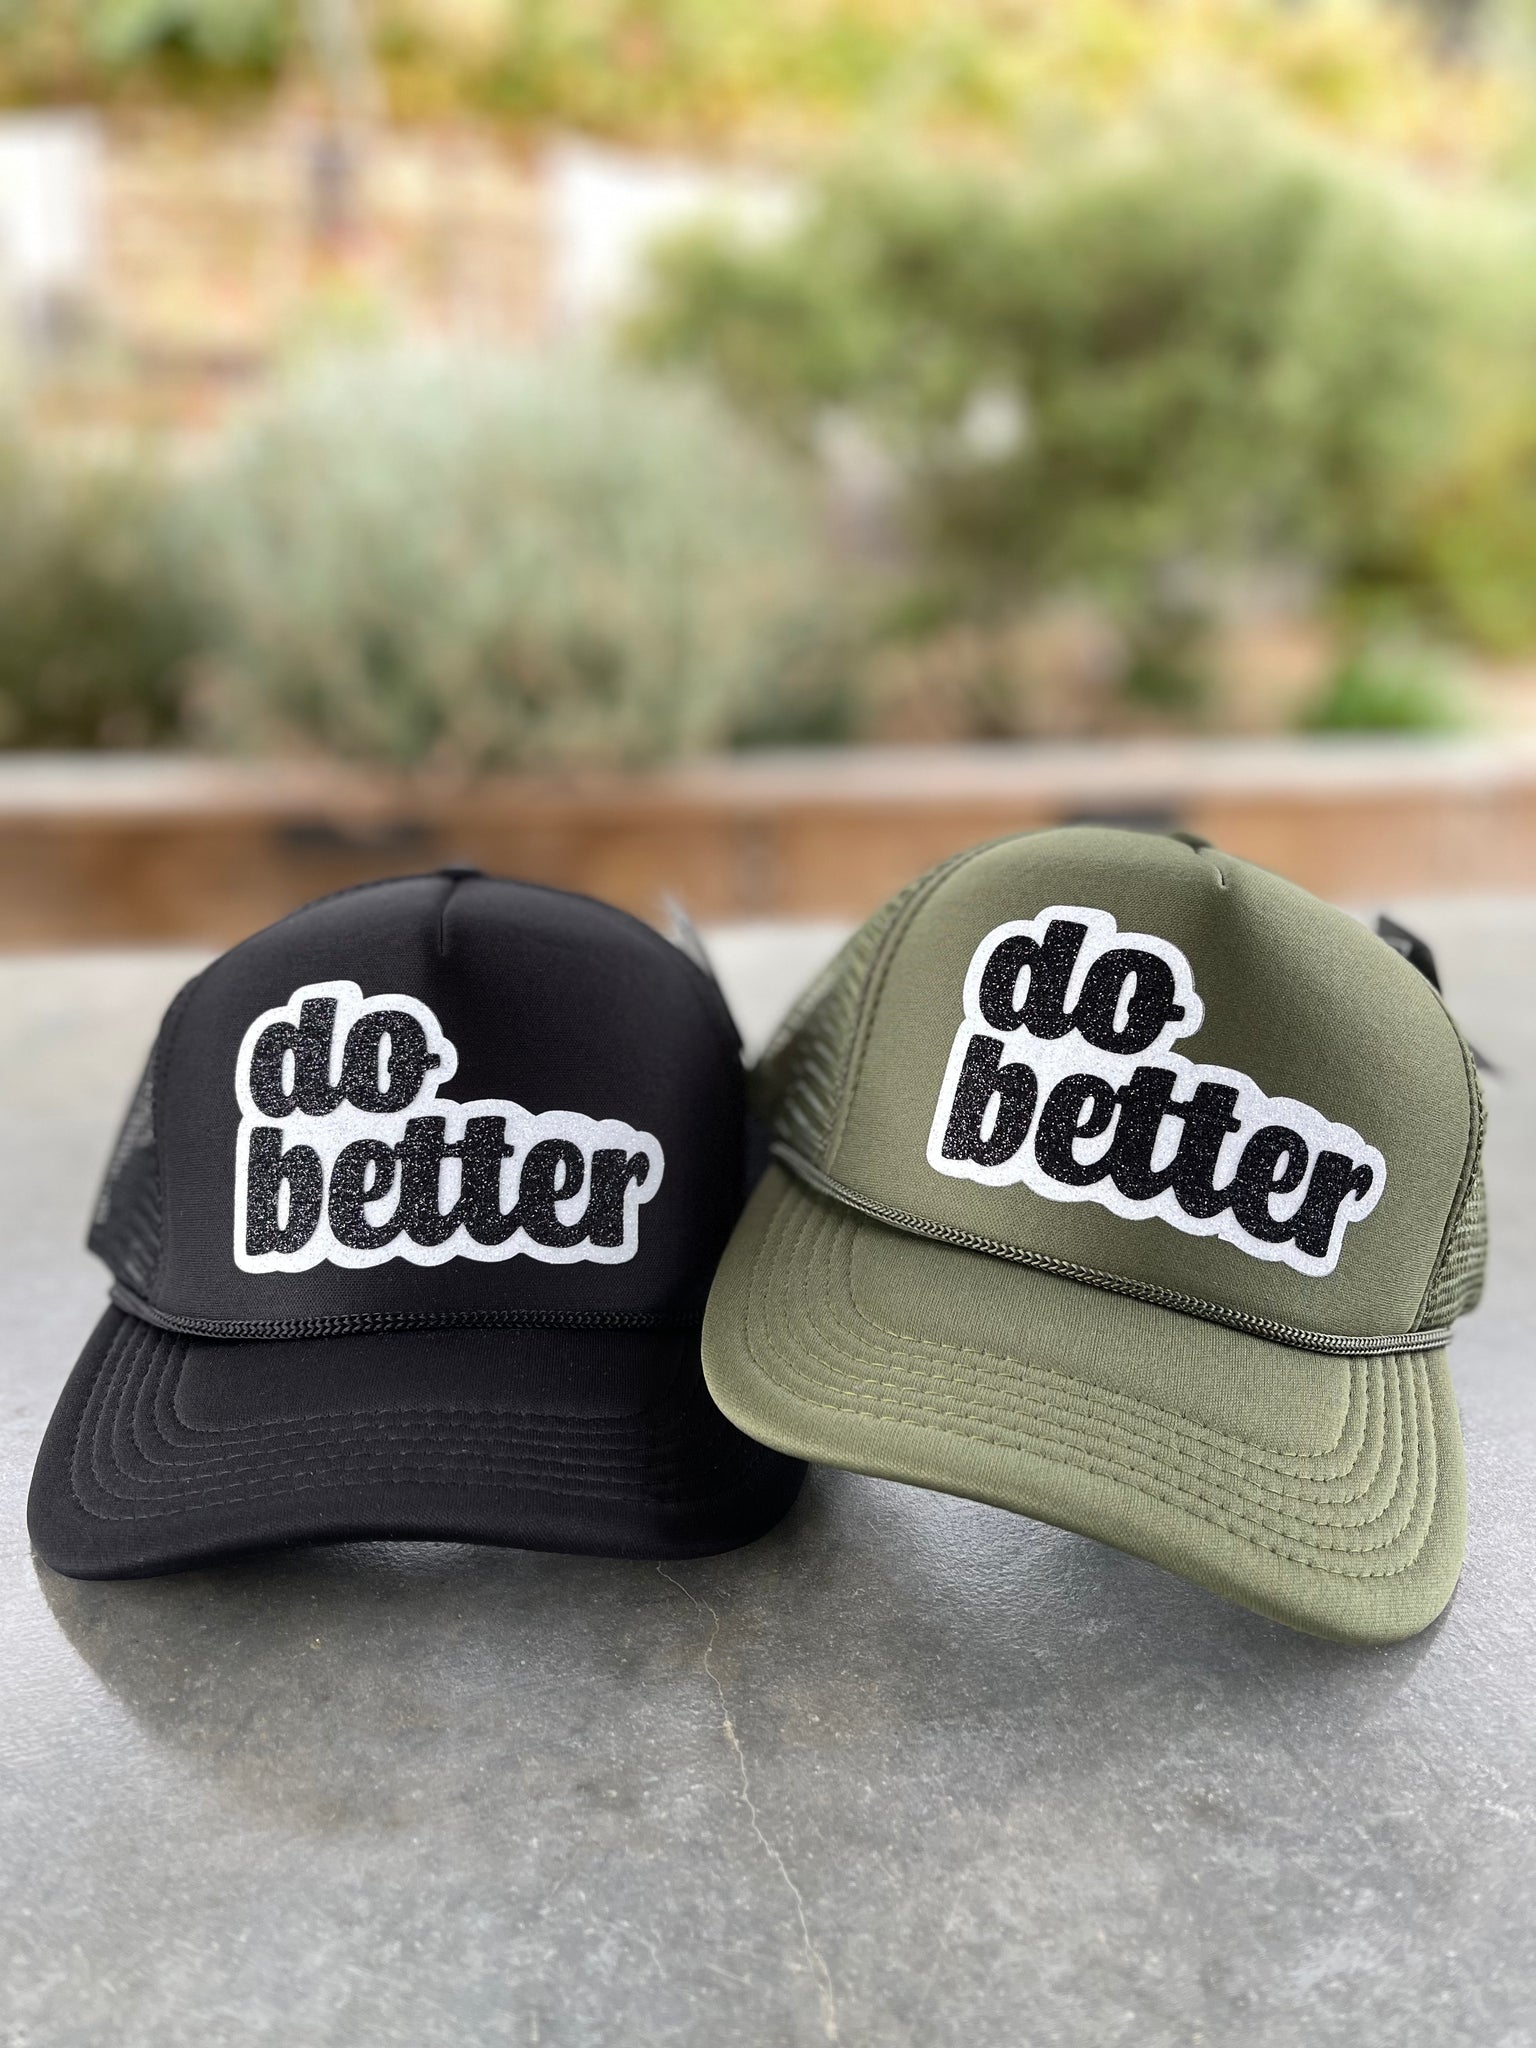 Do Better Hats